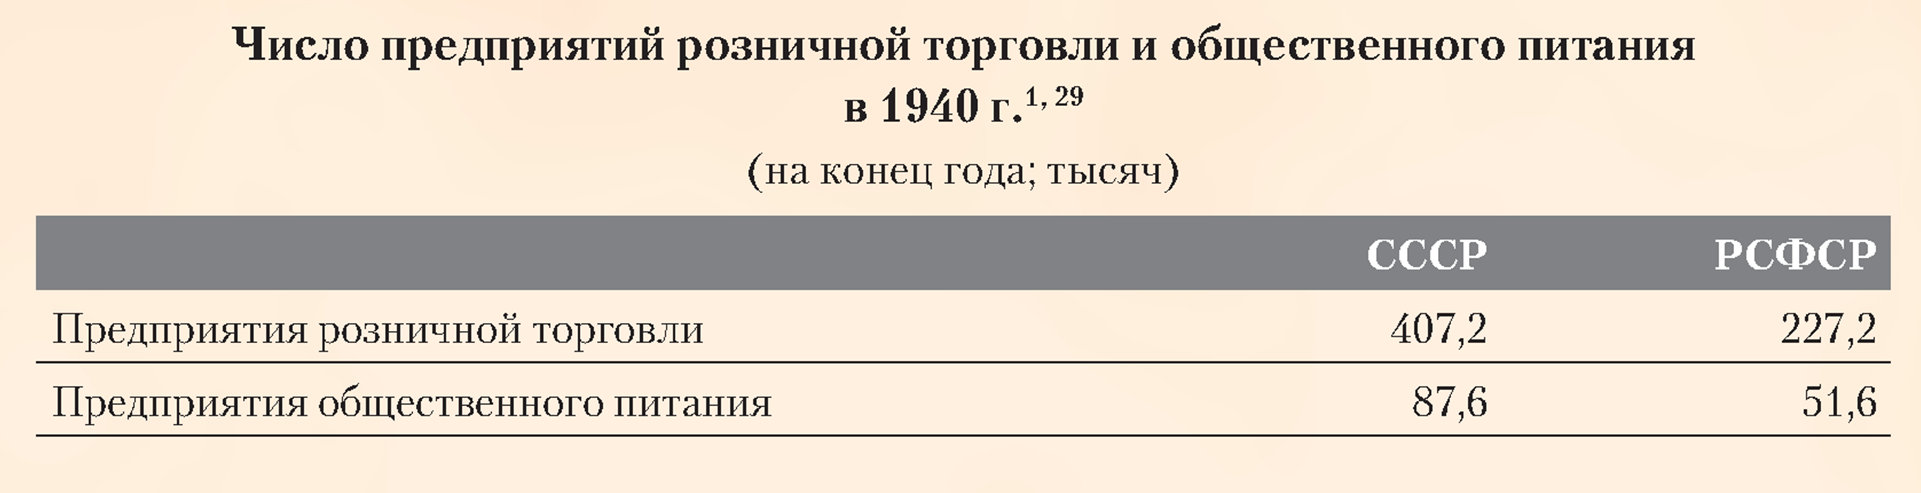 Число предприятий розничной торговли и общественного питания в 1940 году